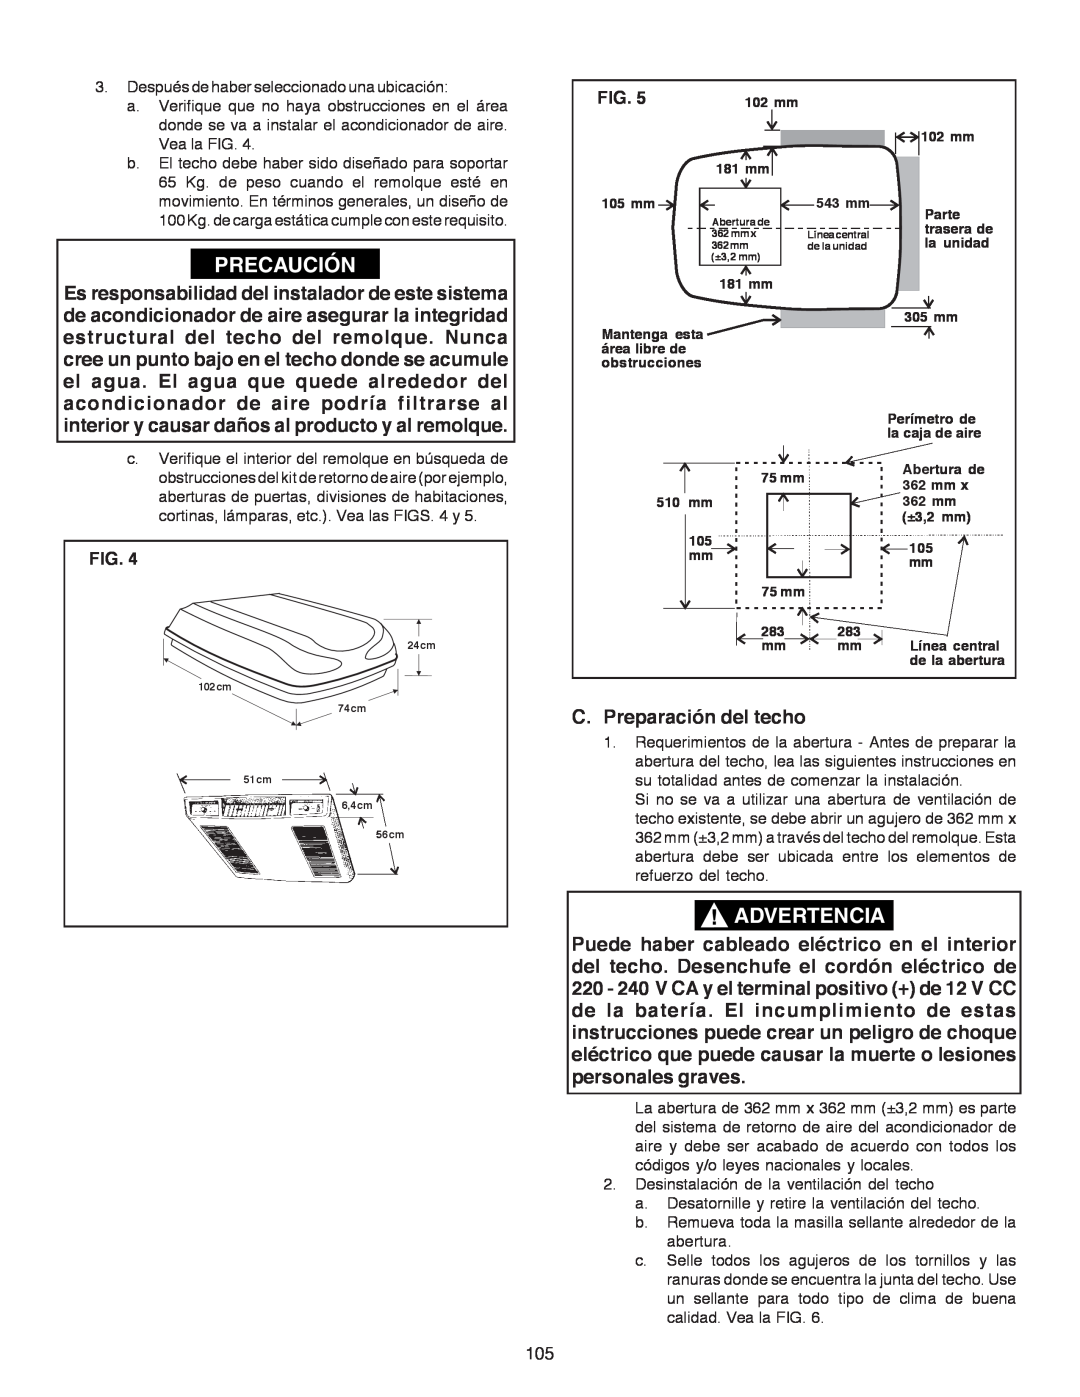 Dometic B3200 manual Precaución, Advertencia, C. Preparación del techo, Fig 